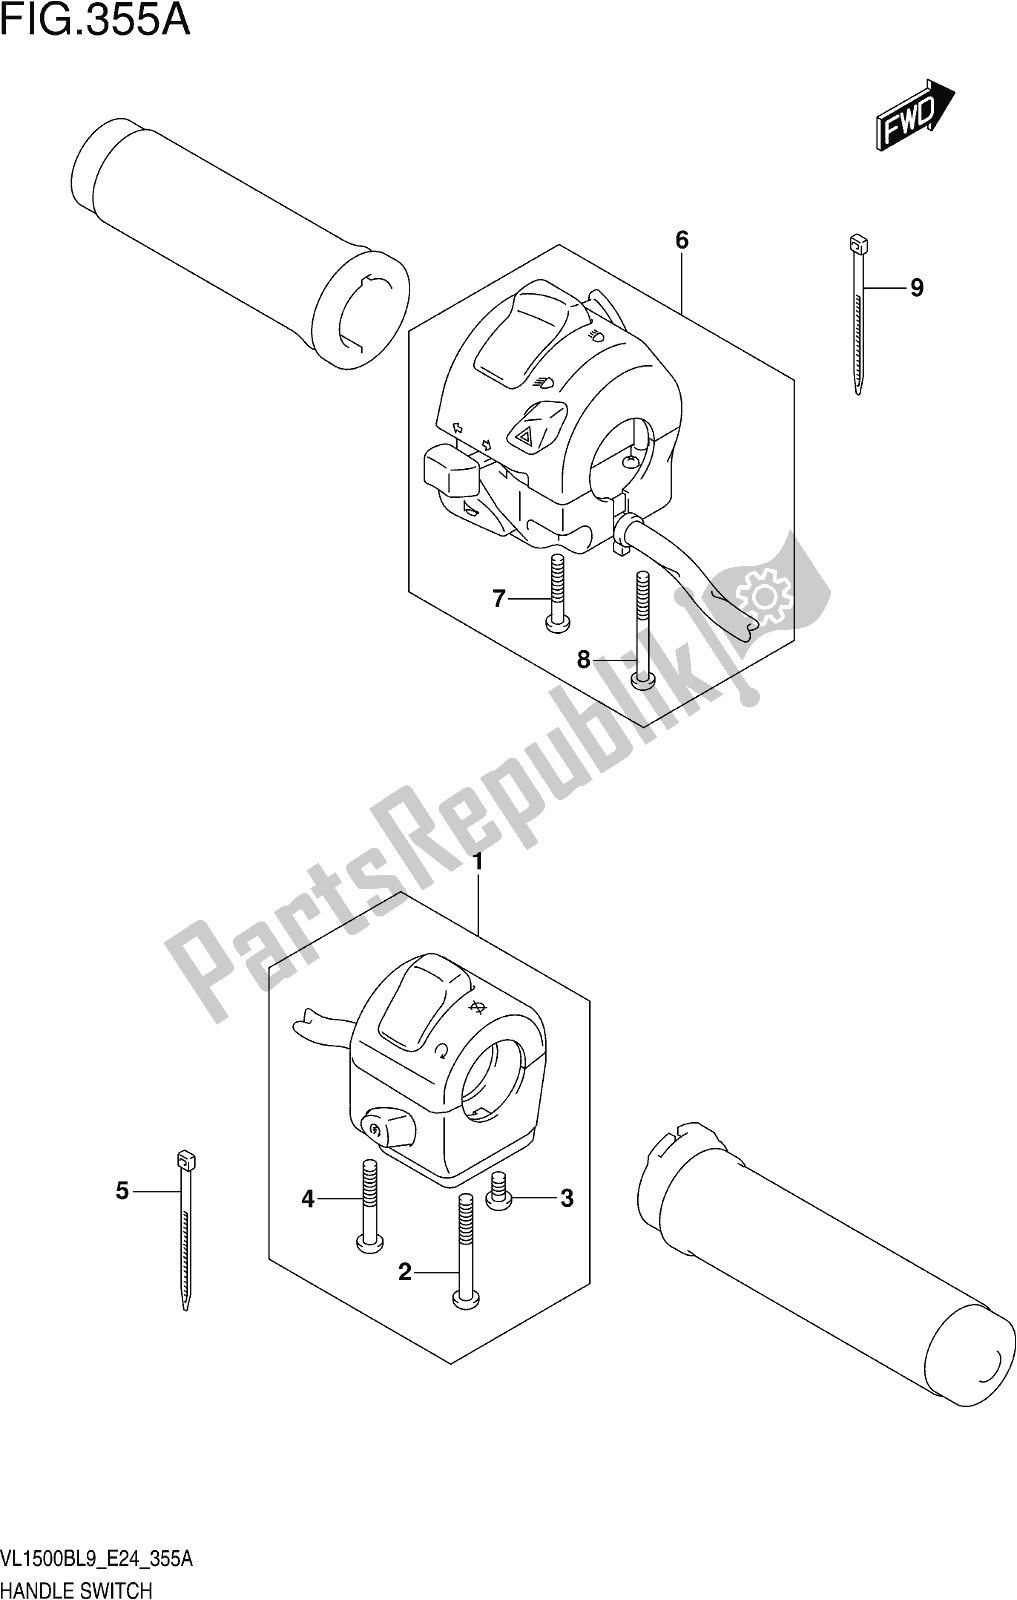 Alle onderdelen voor de Fig. 355a Handle Switch van de Suzuki VL 1500B 2019